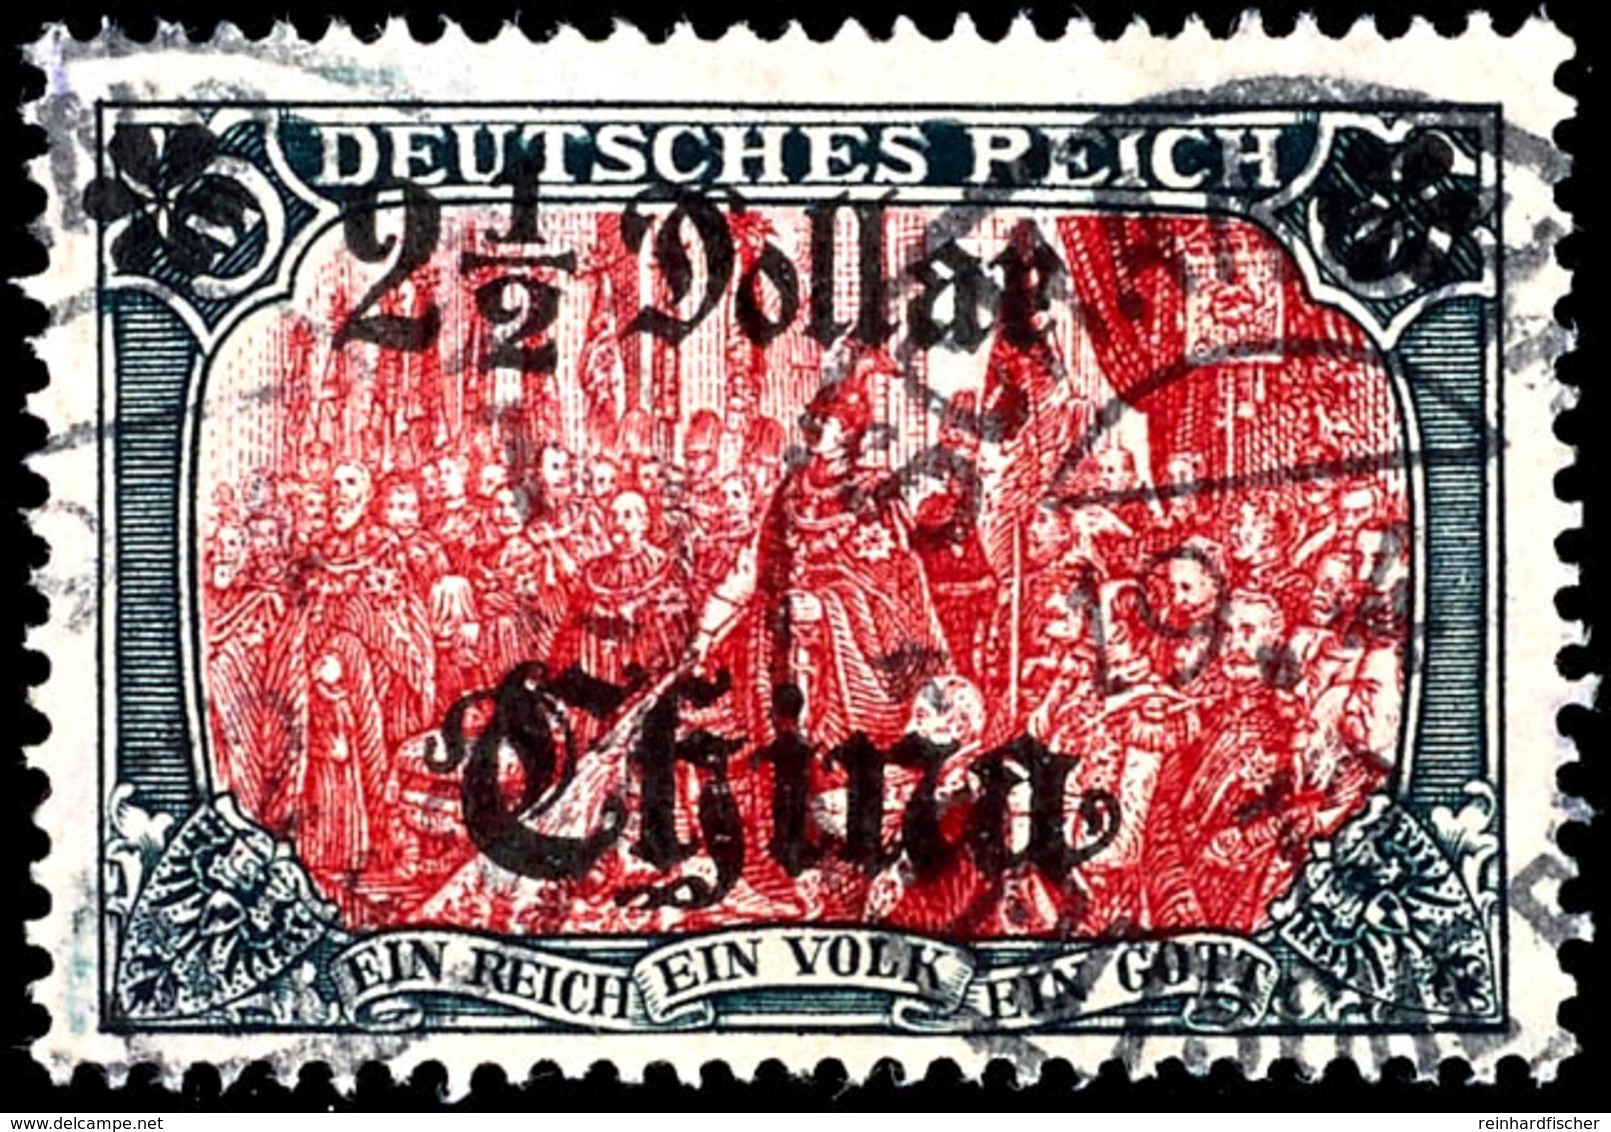 5 Mark Deutsches Reich Mit Wasserzeichen, Aufdruck "China 2 1/2 Dollar", Linke Rosette Auf Einer Spitze, Tadellos, Geste - China (offices)